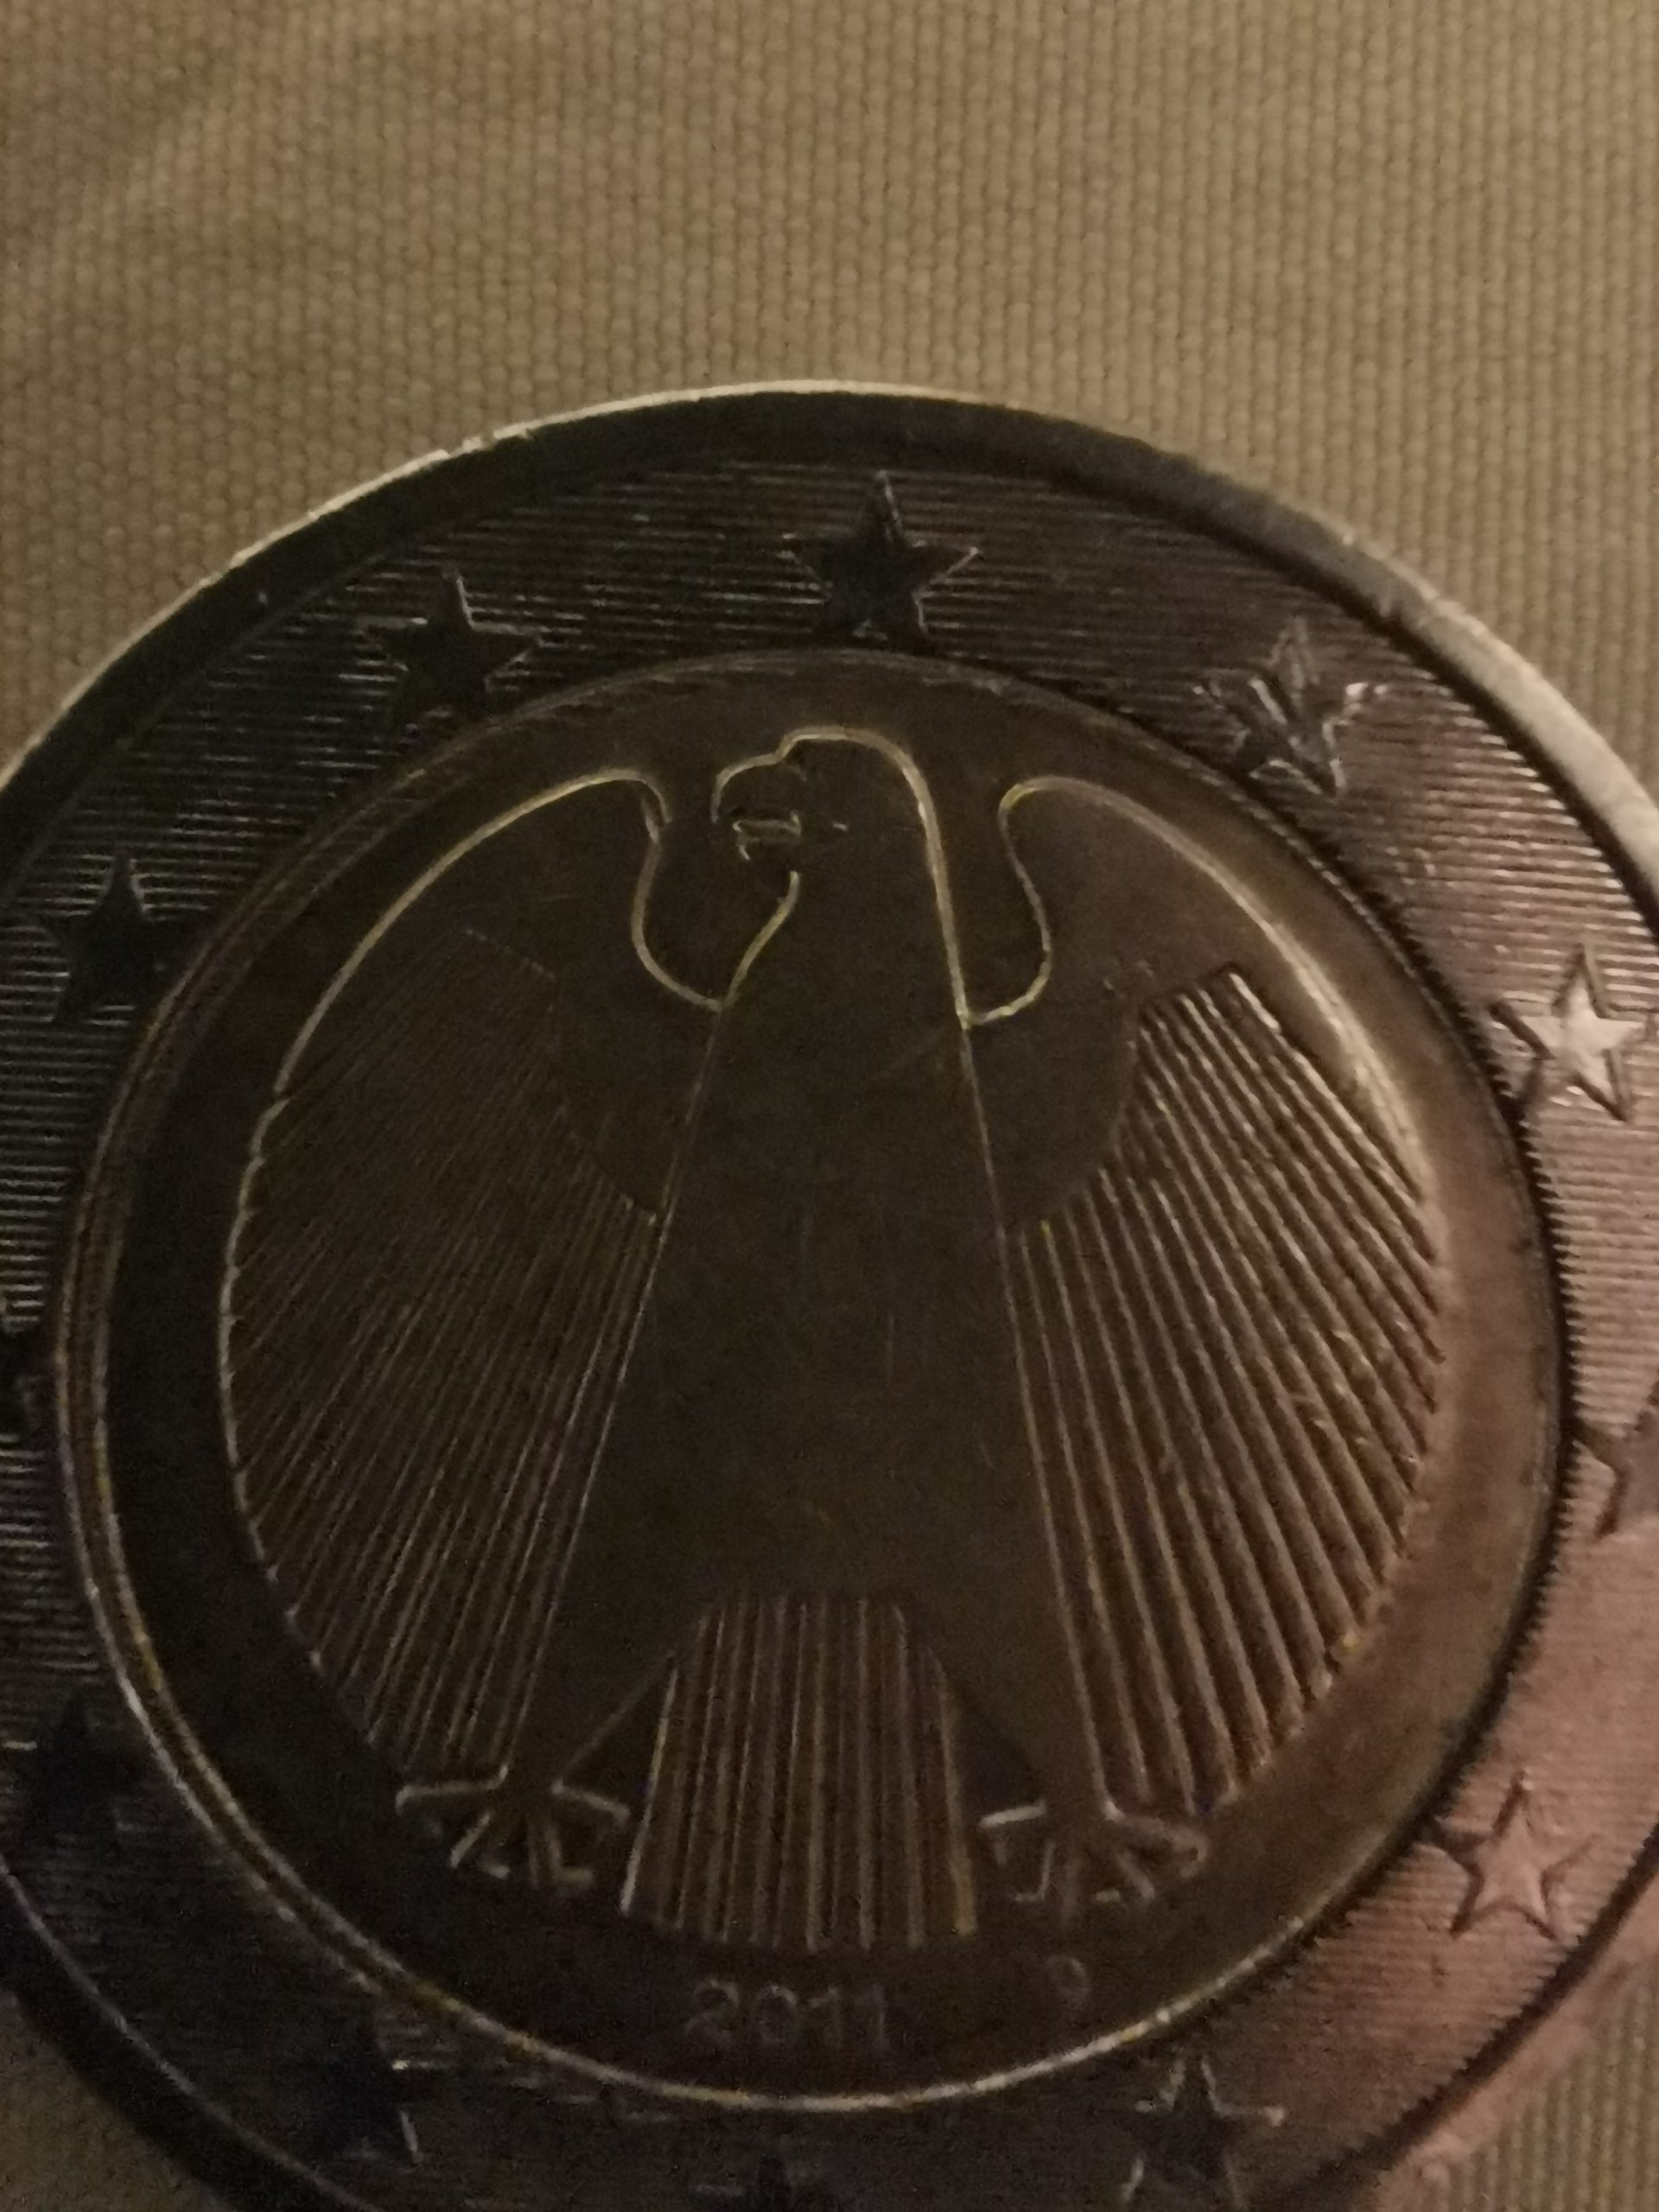 Deutsche 2 euro münze – German 2 euro coin